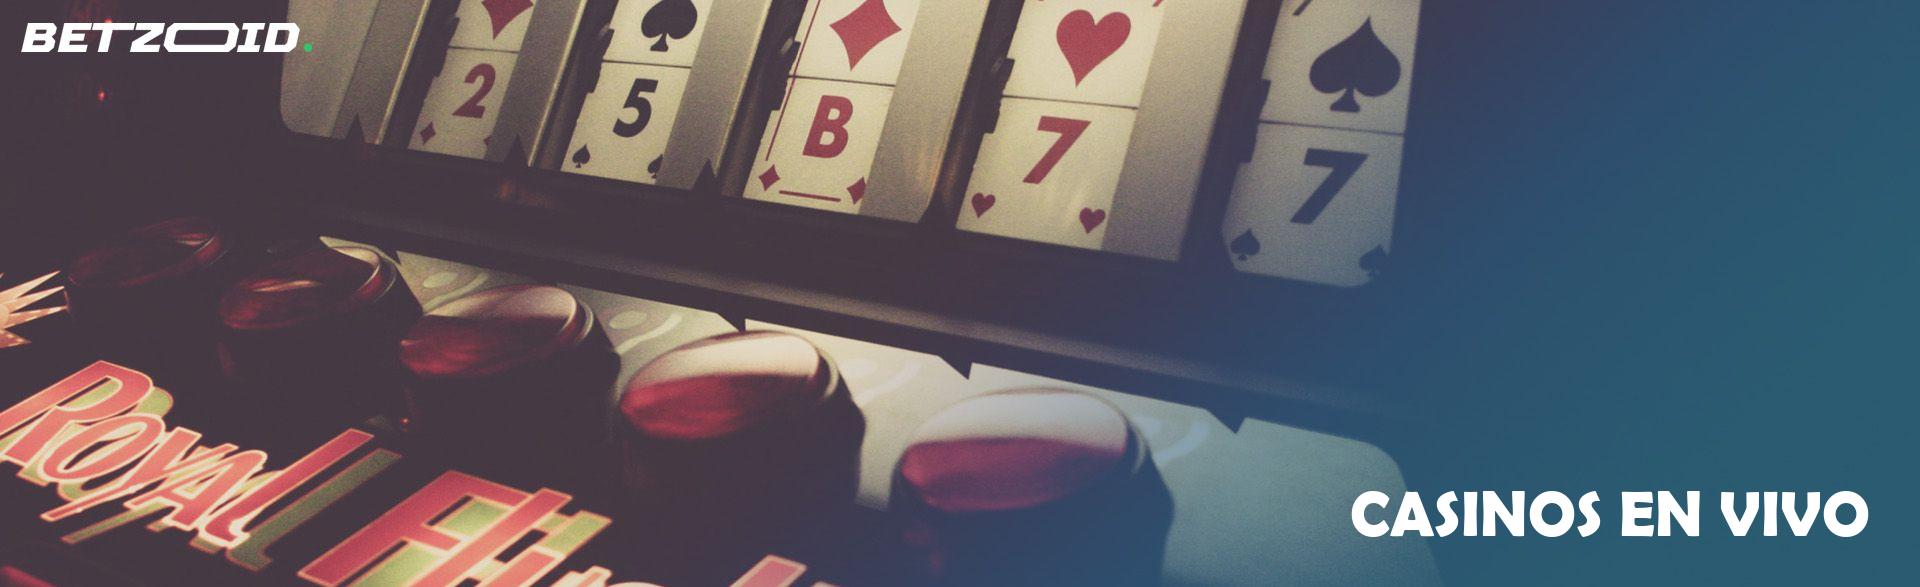 Casinos En Vivo.